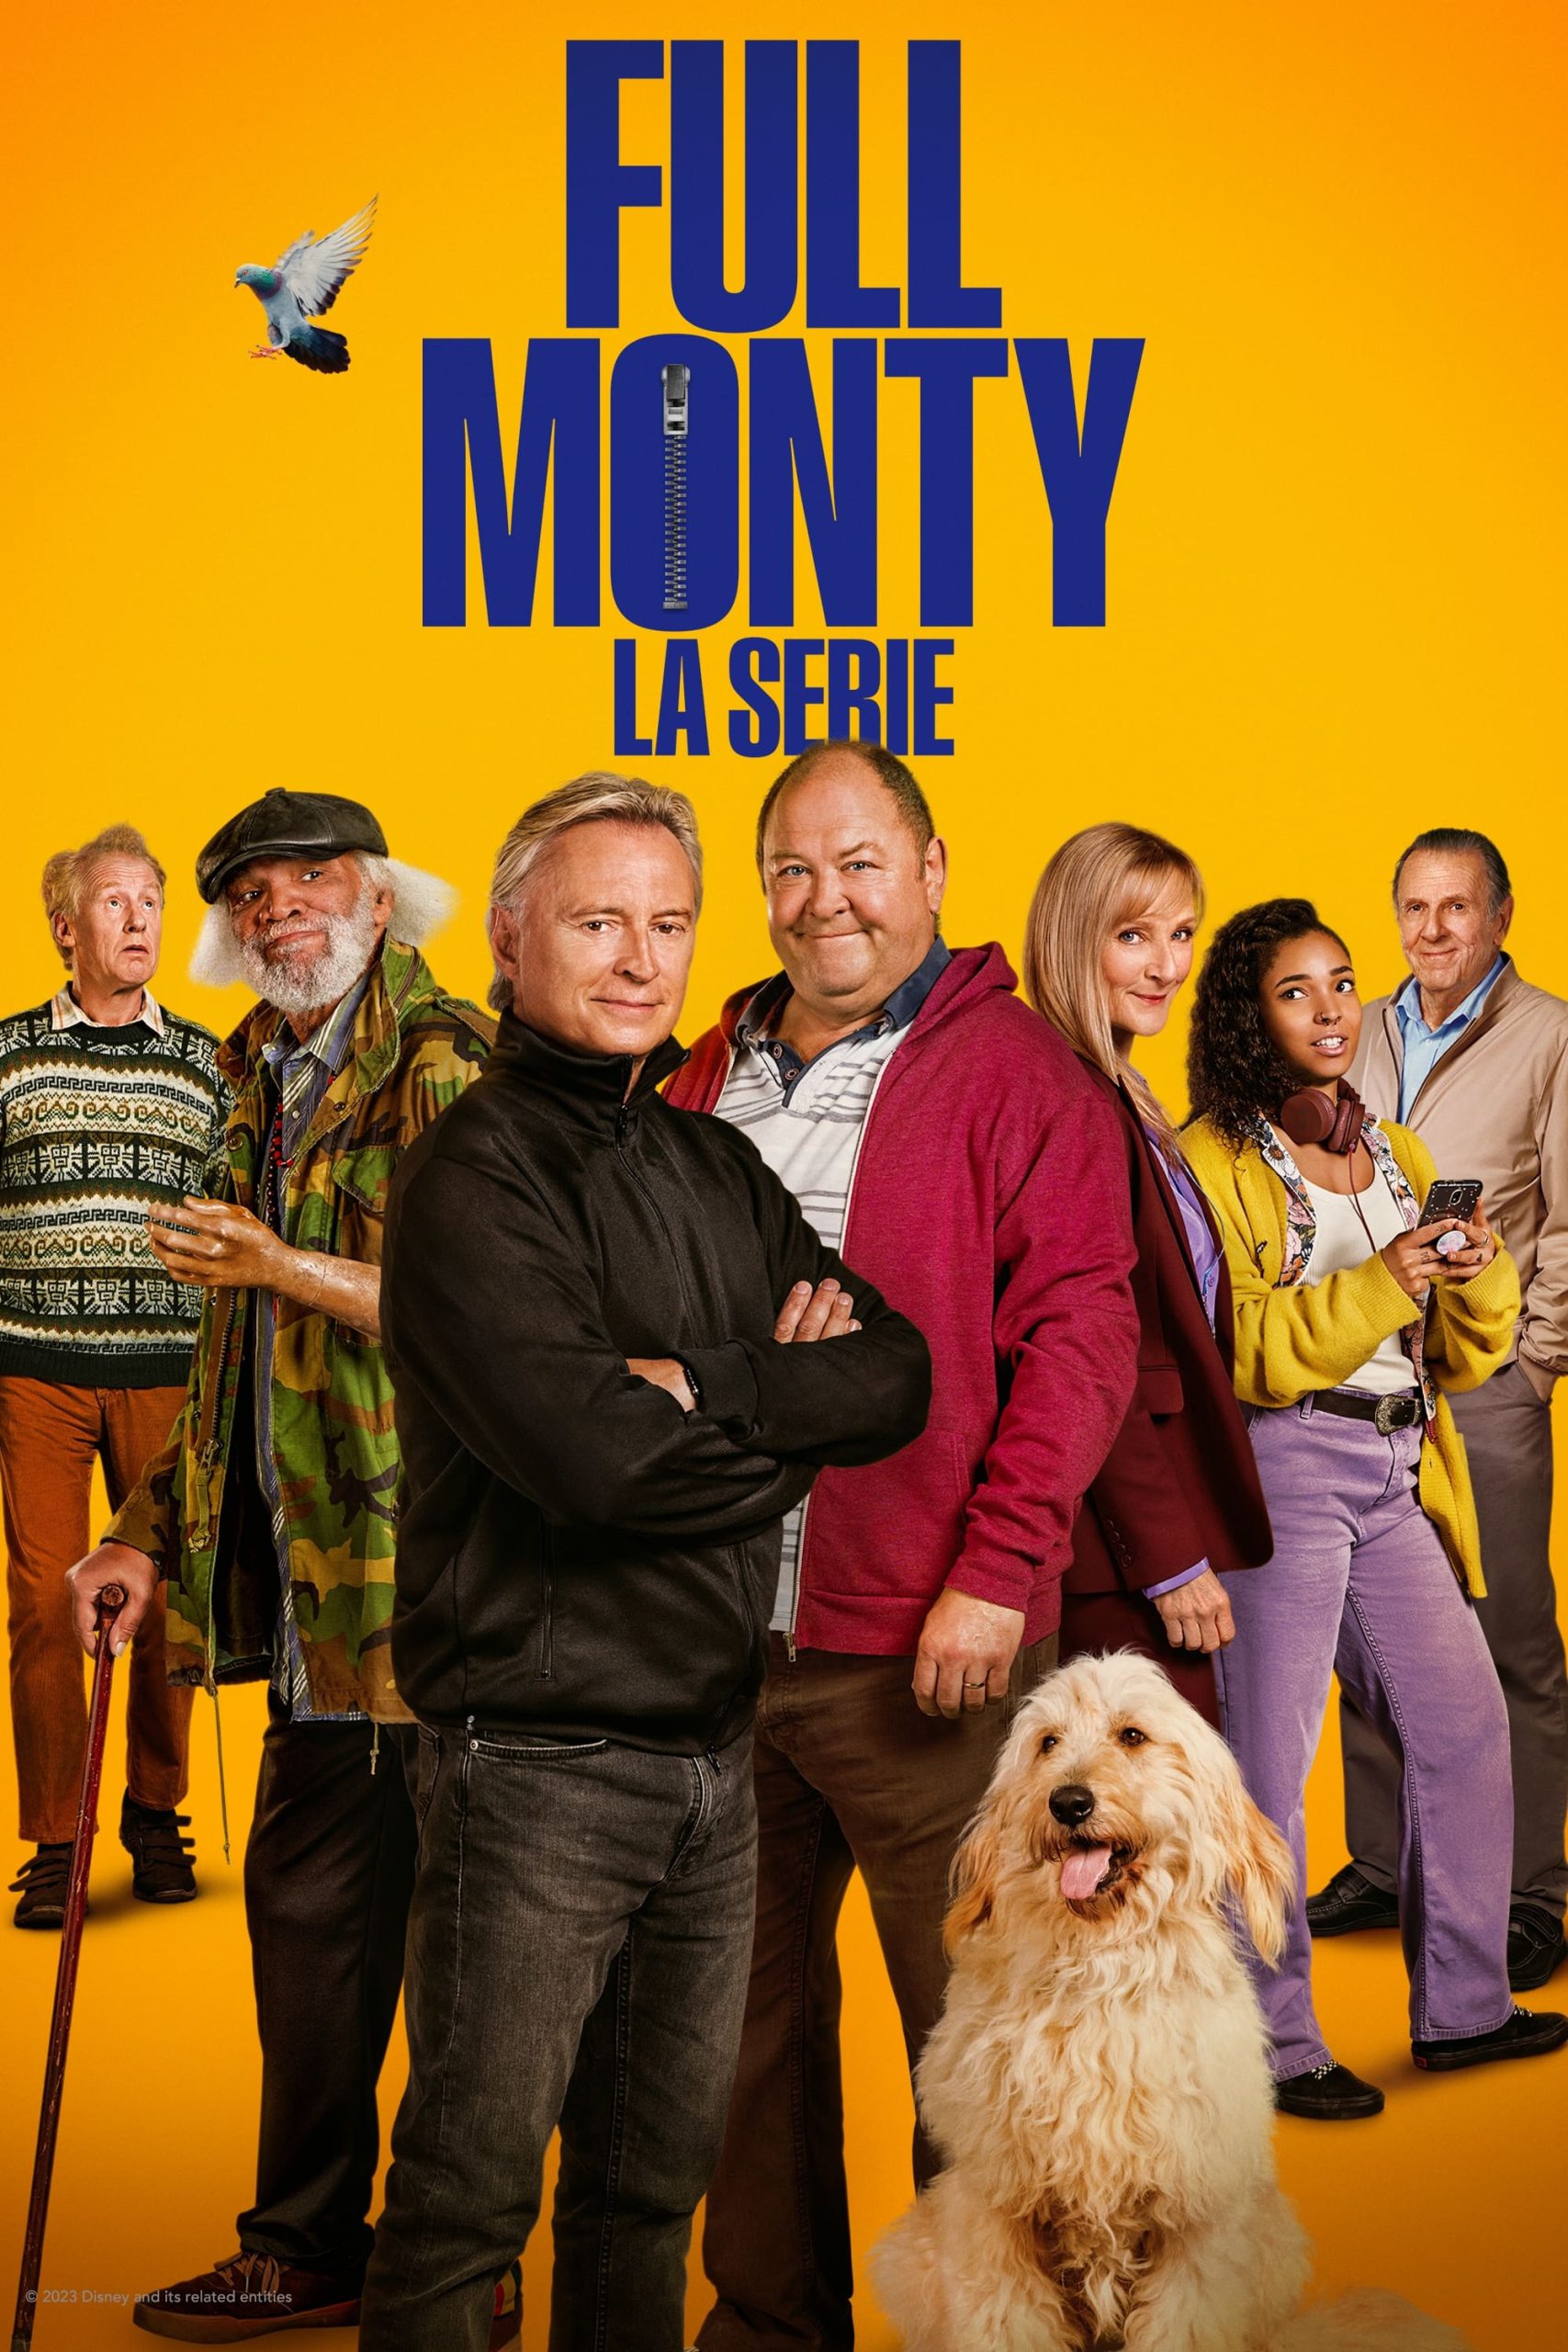 Full Monty – La serie